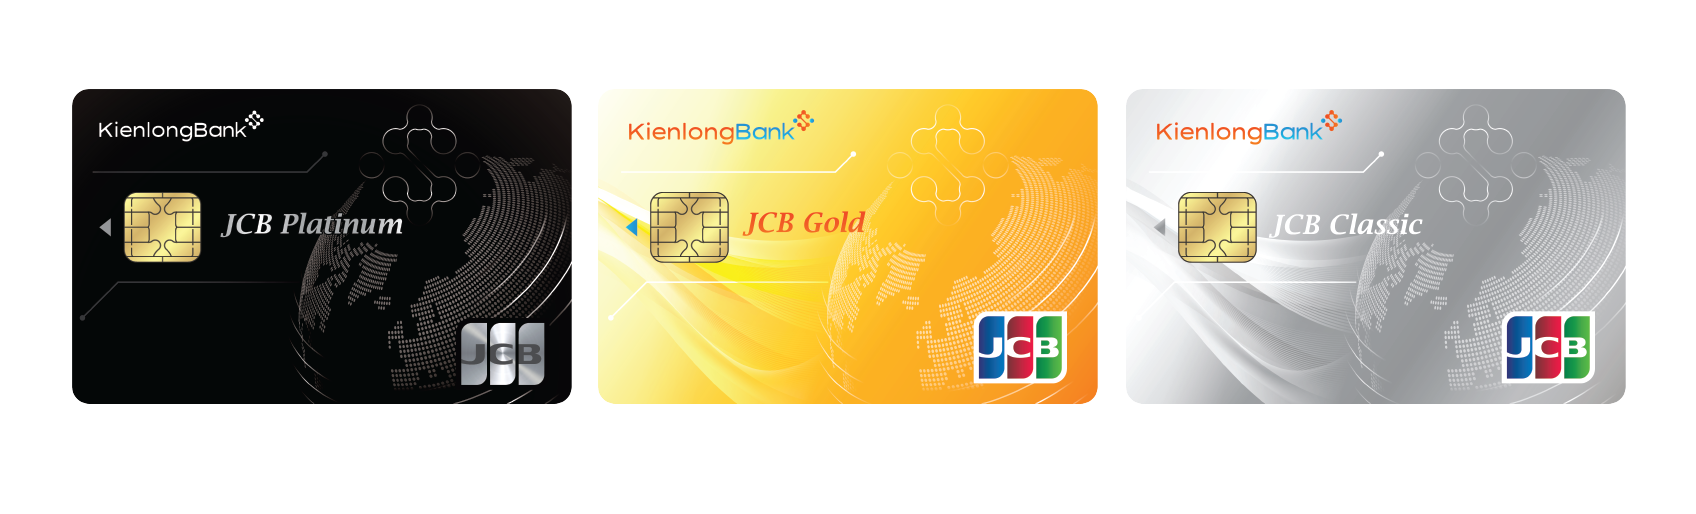 Thẻ tín dụng quốc tế KienlongBank JCB